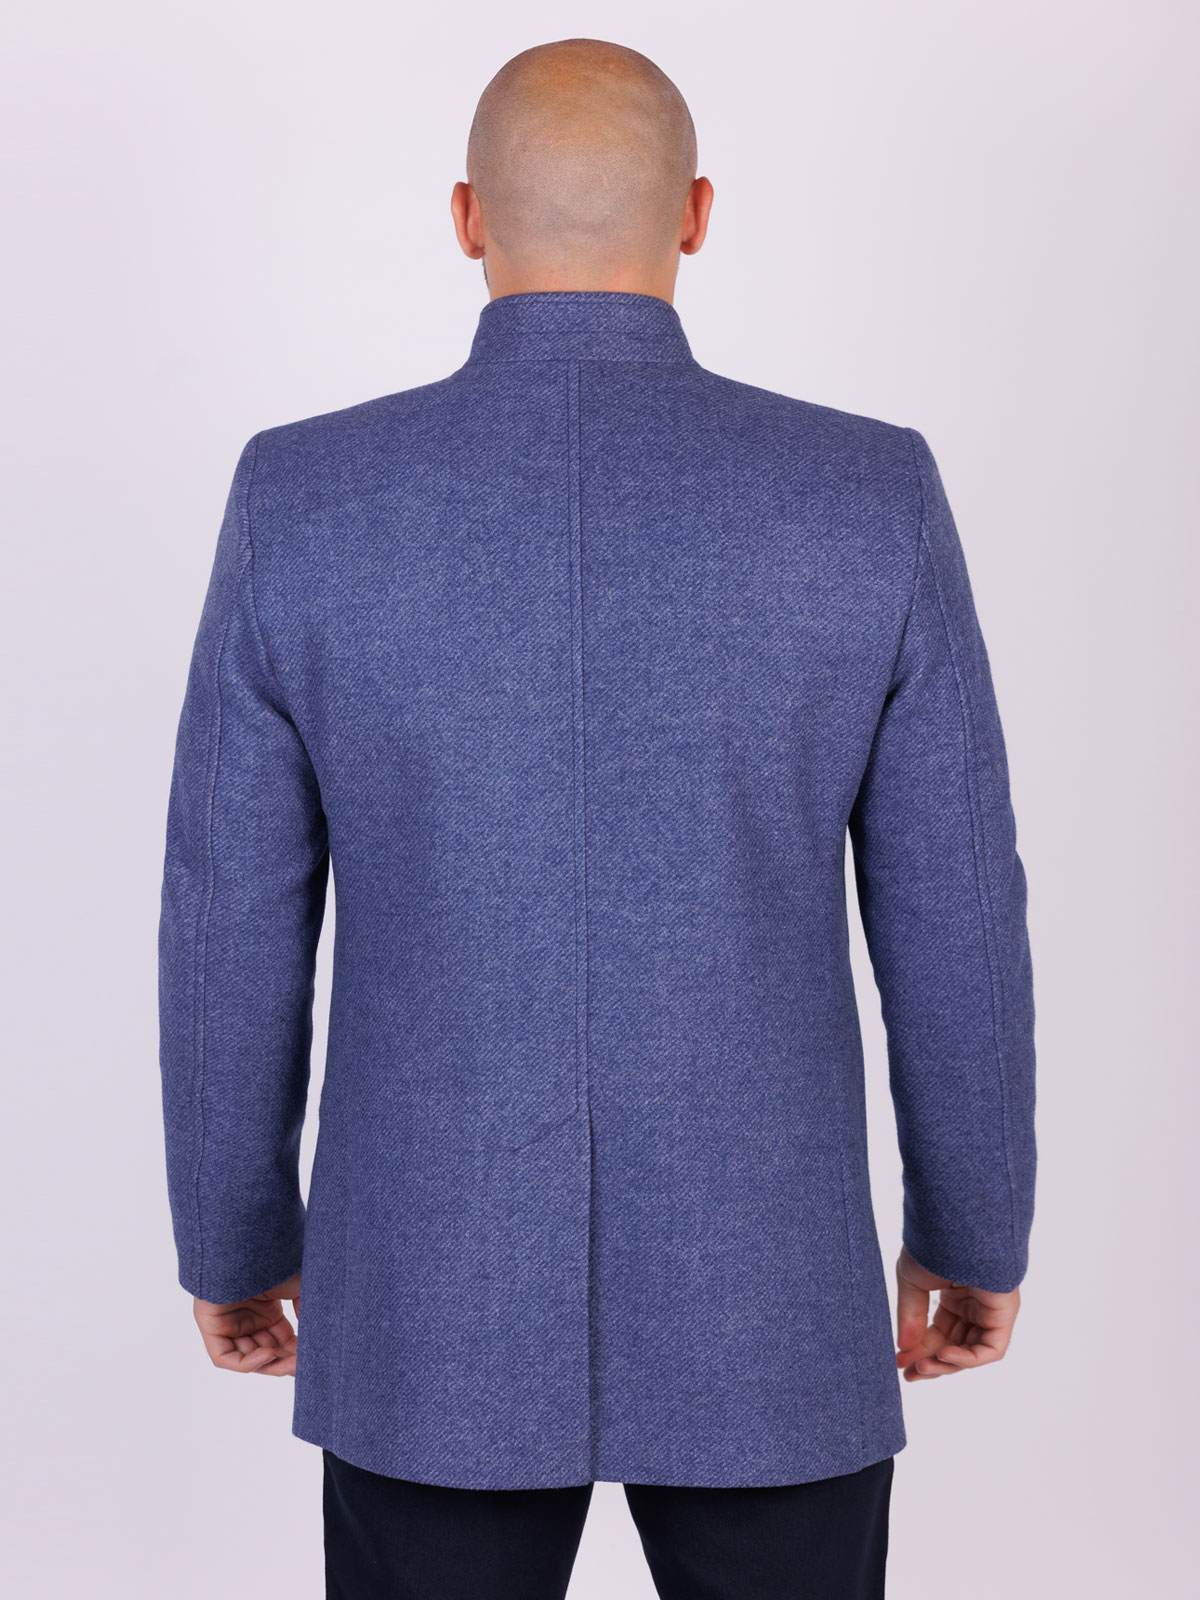 Ανδρικό μακρύ παλτό σε μπλε χρώμα - 65125 € 167.60 img2